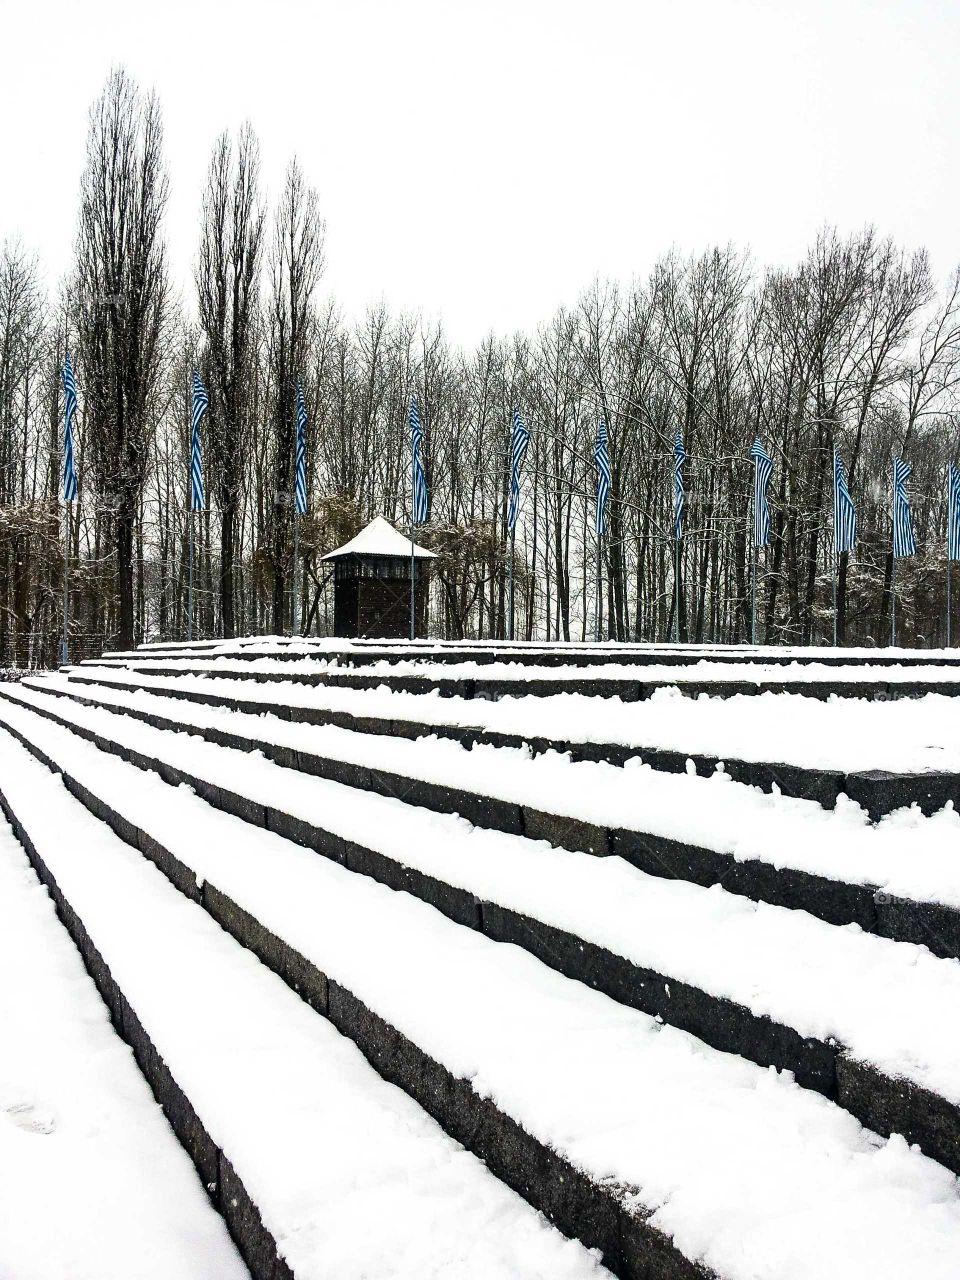 Winter time in Auschwitz